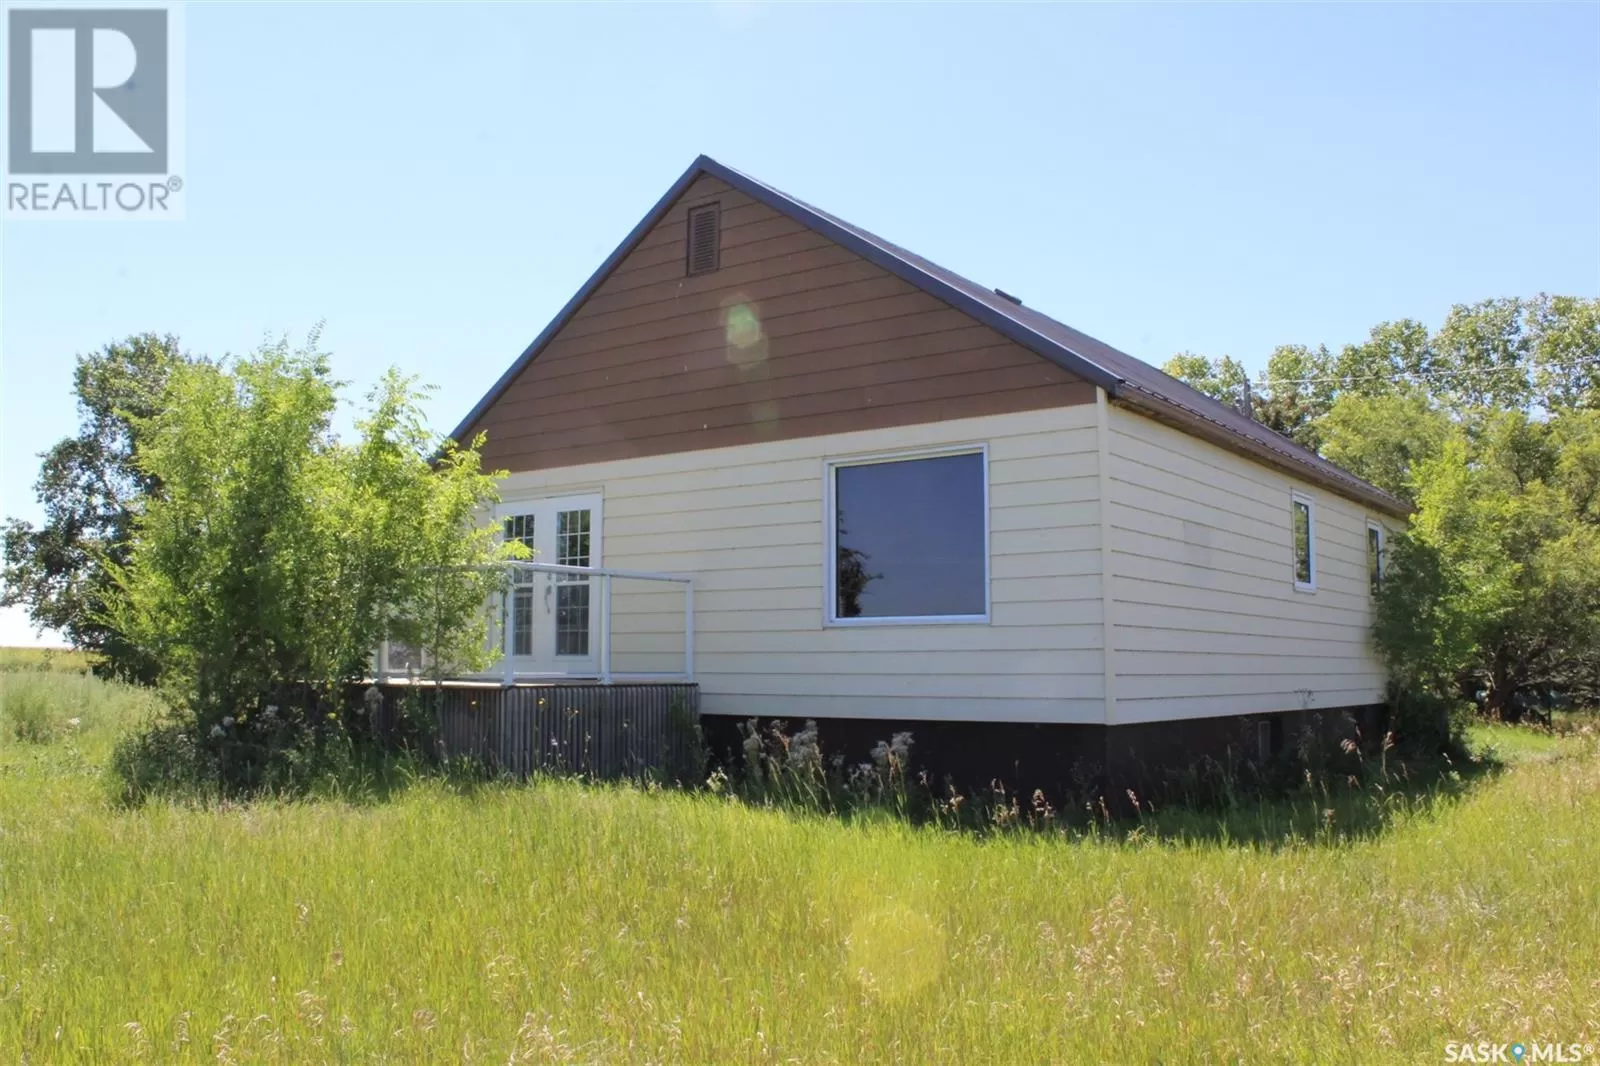 House for rent: Oungre Acreage Rm Souris Valley #7 Bungalow, Souris Valley Rm No. 7, Saskatchewan S0C 1Z0